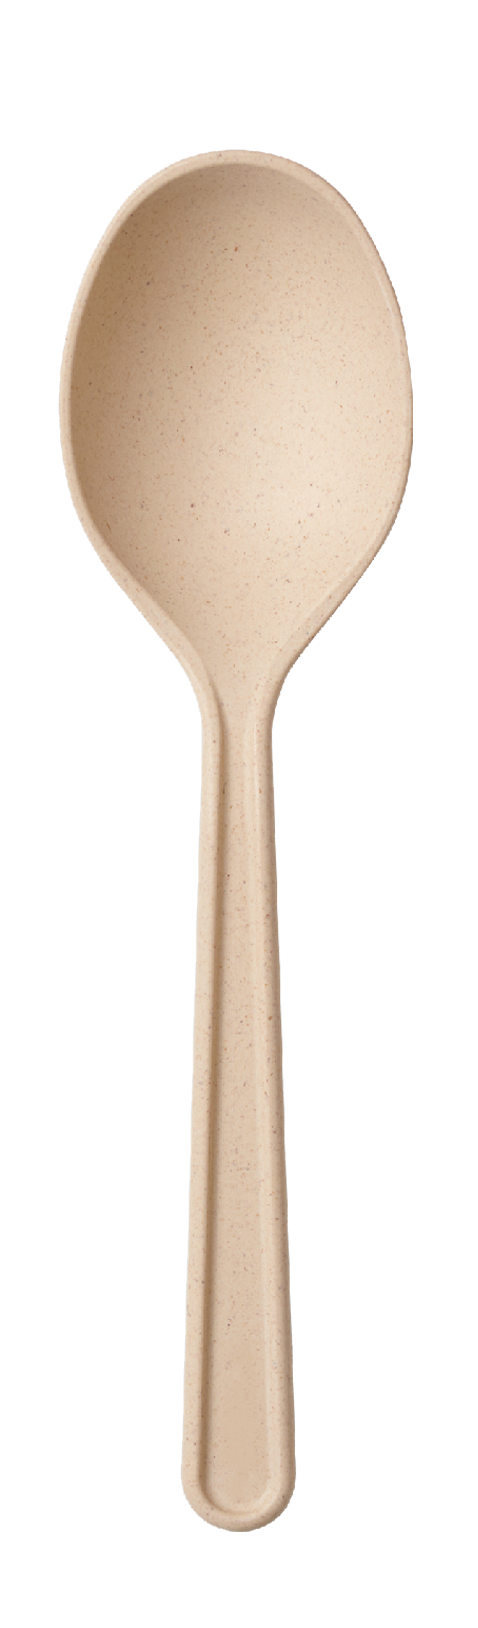 bamboo spoon